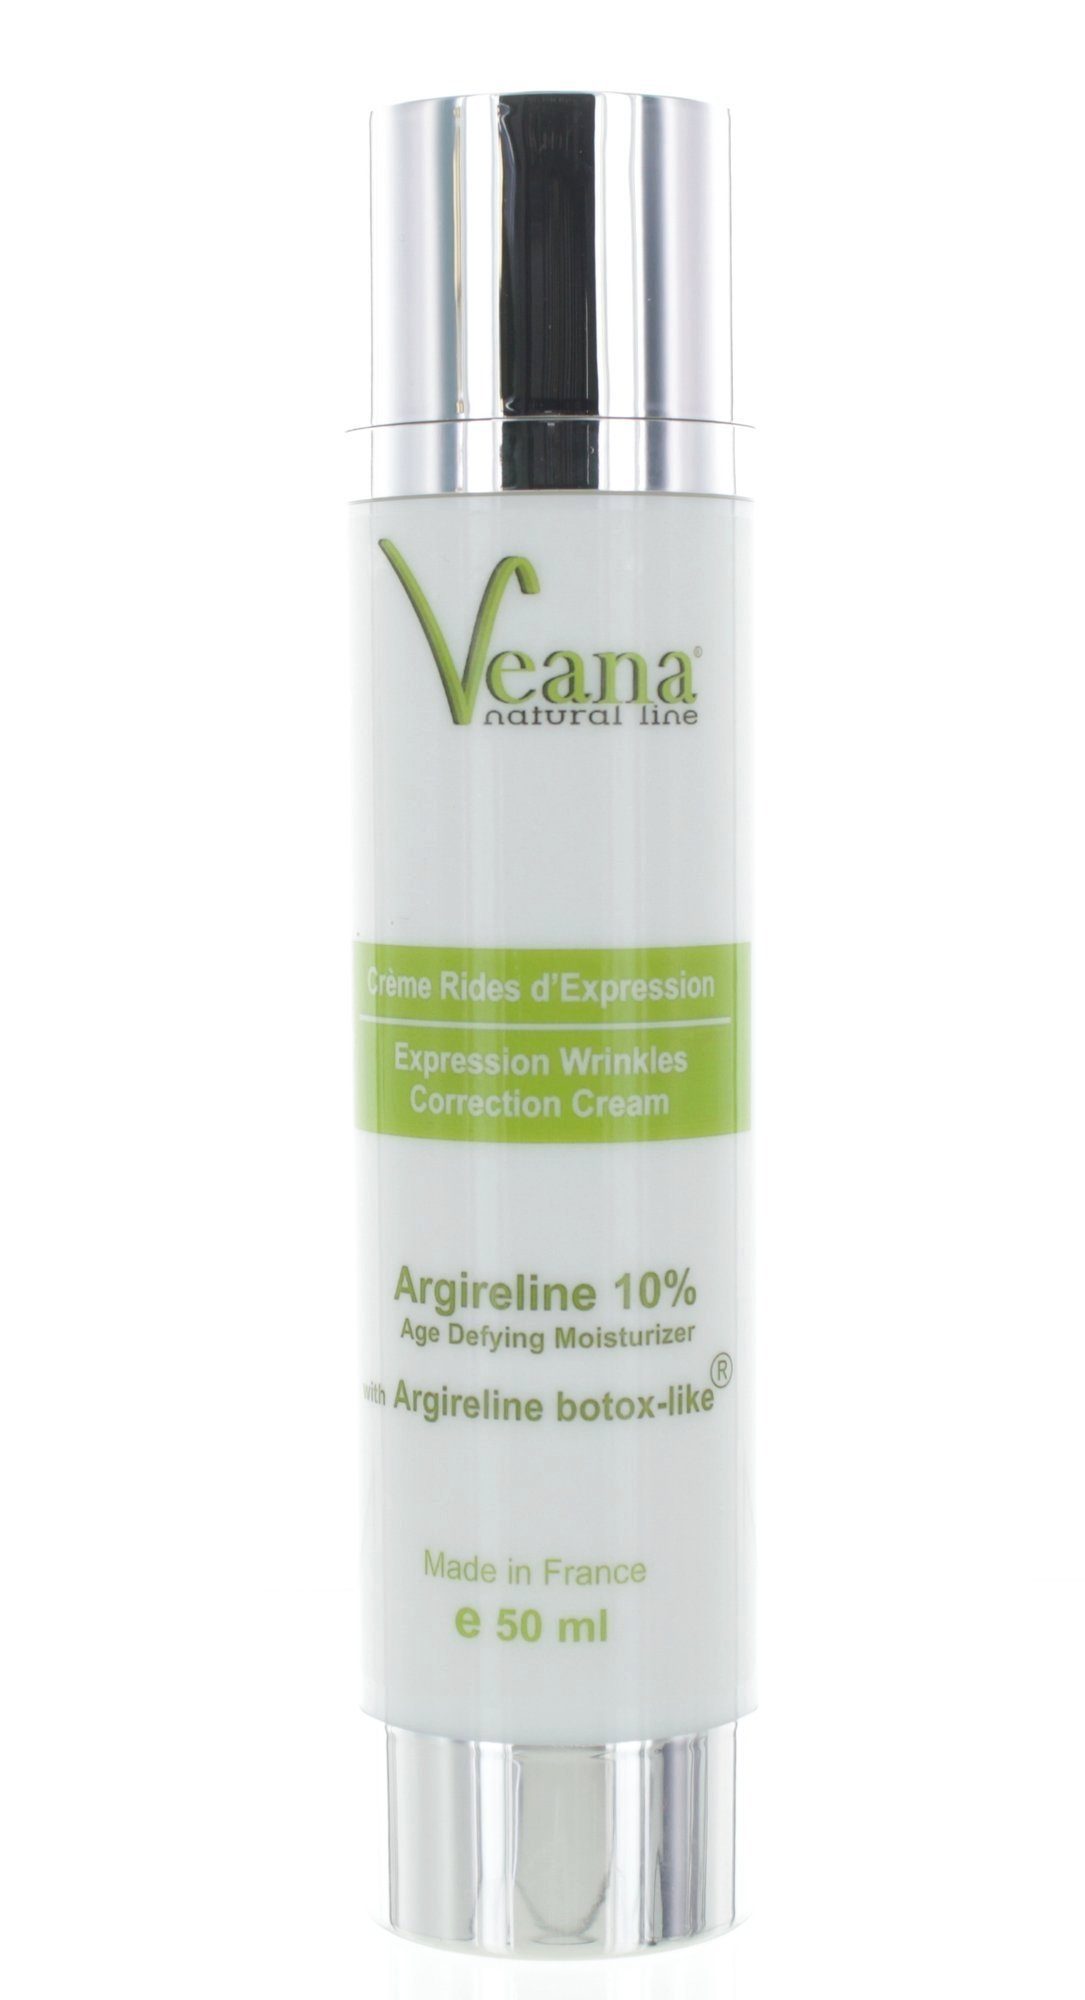 ARGIRELINE Haut, makellose frische (50ML), CREME Anti-Aging, Veana Haut 10% Anti-Aging-Creme